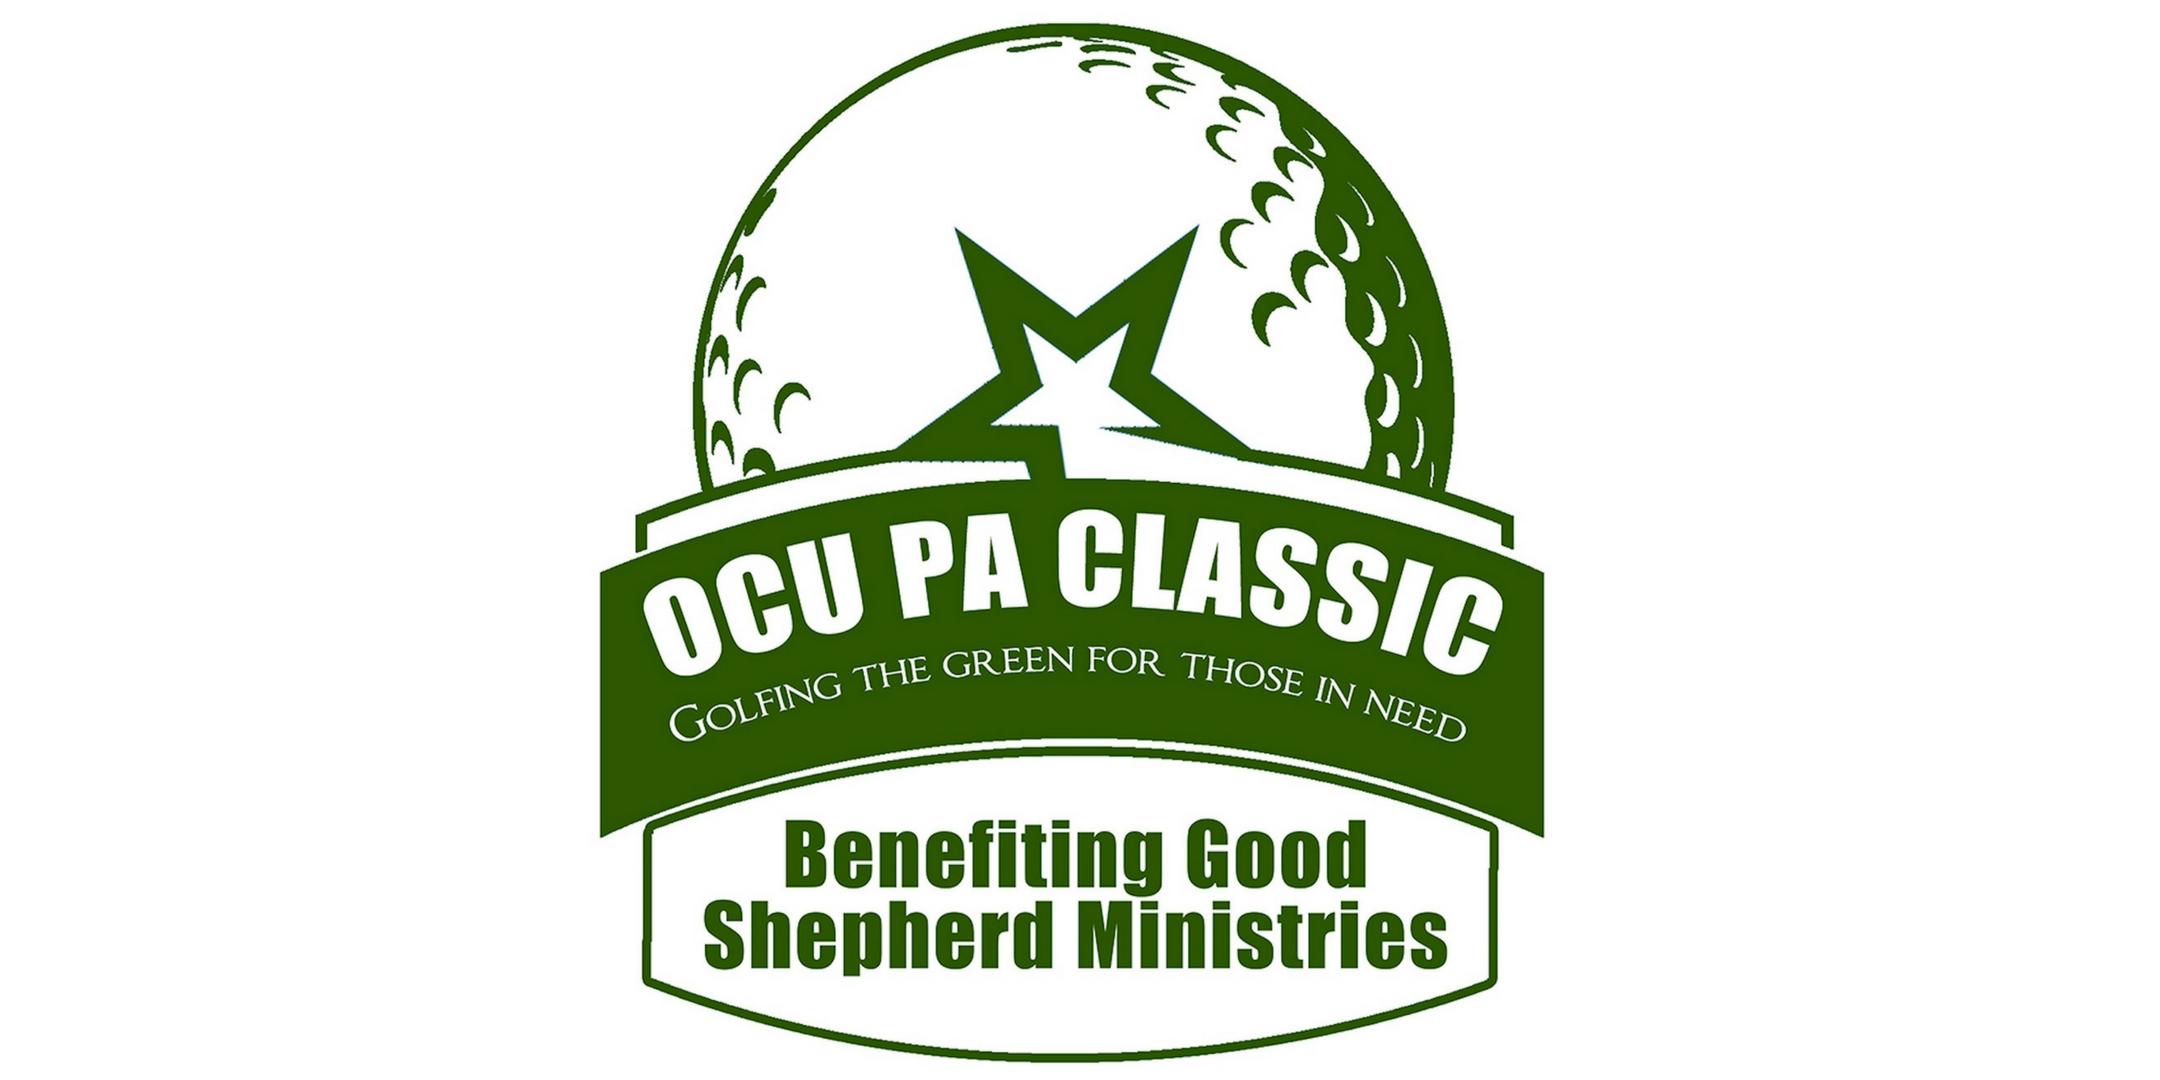 OCU PA Classic Golf Tournament